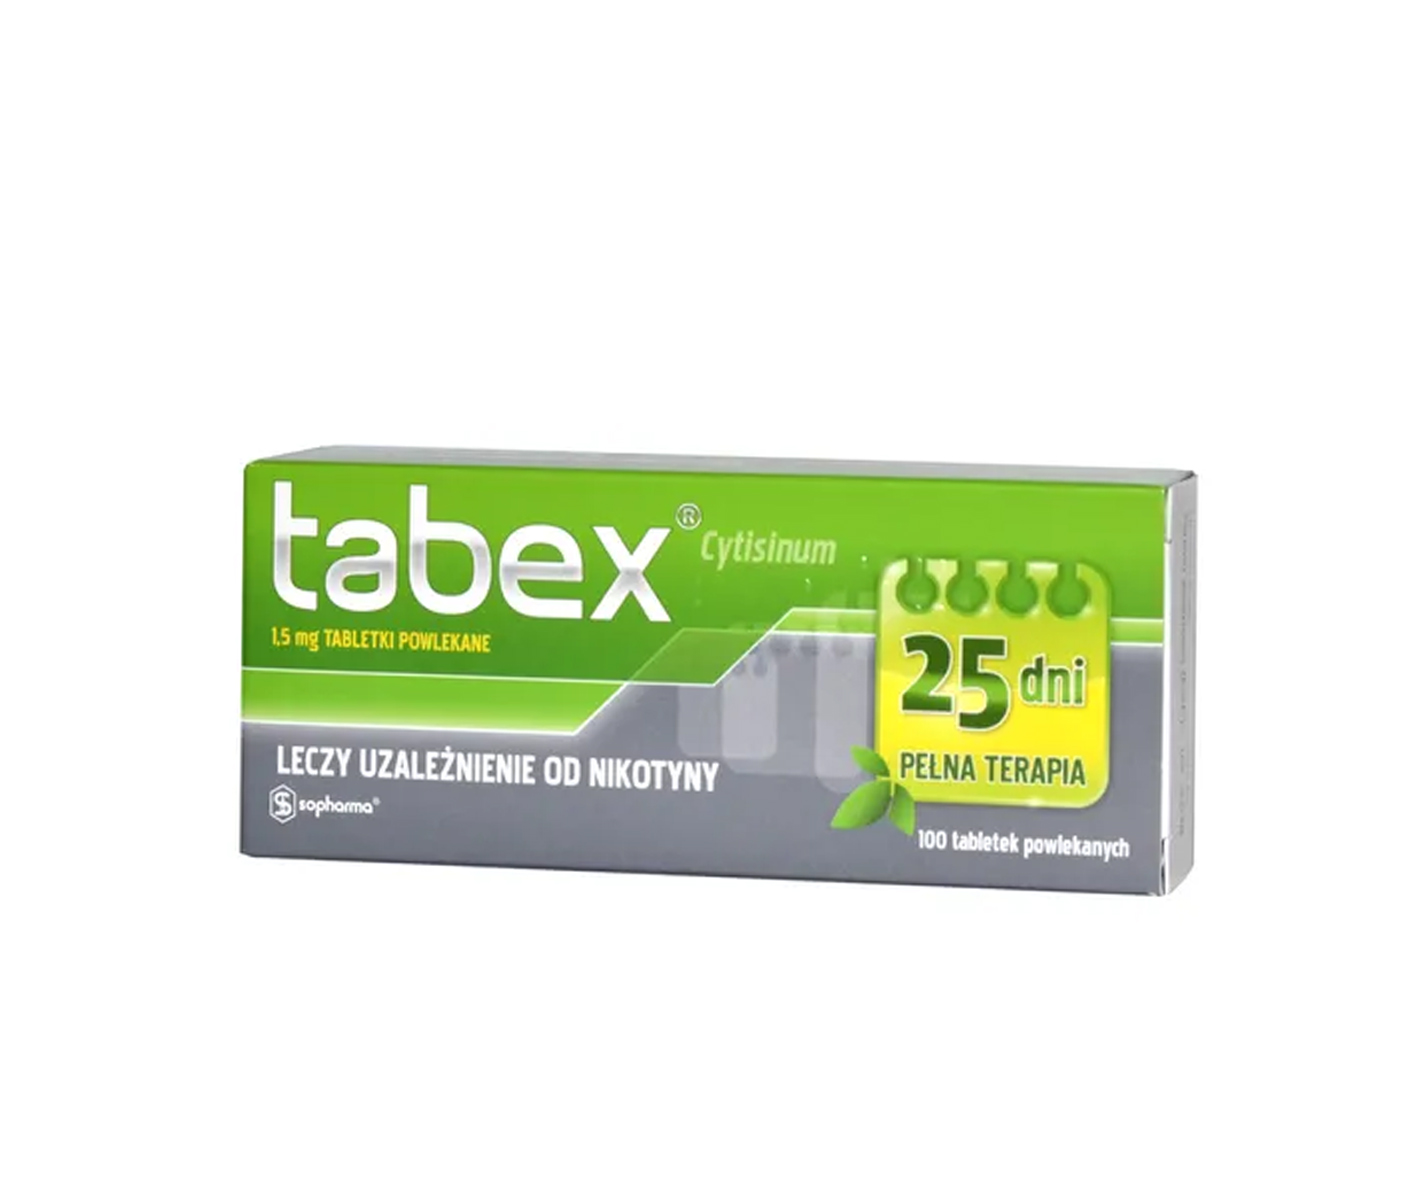 Tabex, smoking cessation pills